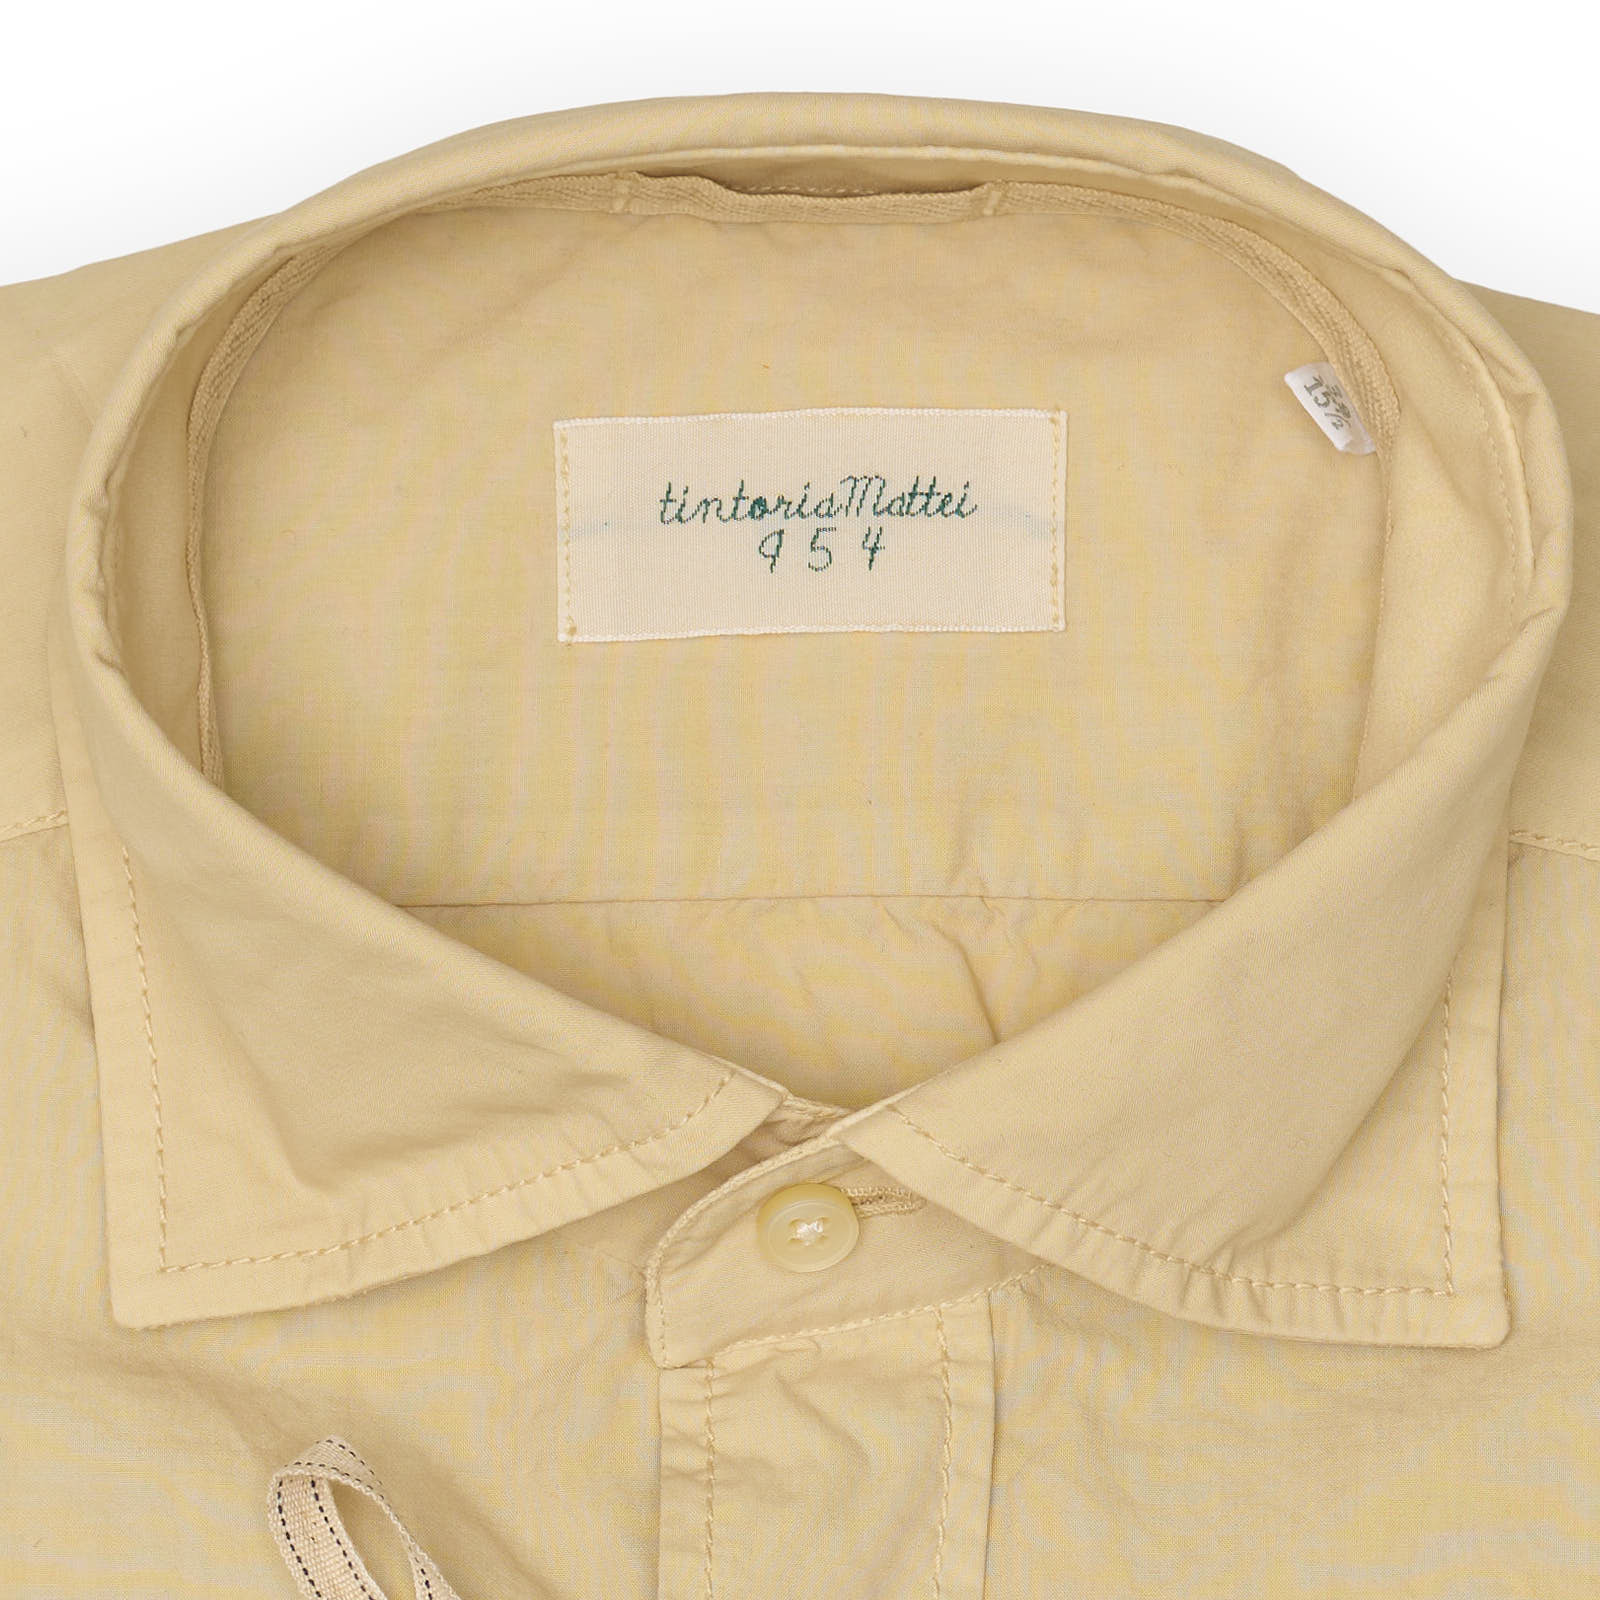 TINTORIA MATTEI 954 Tan Poplin Cotton Dress Shirt NEW